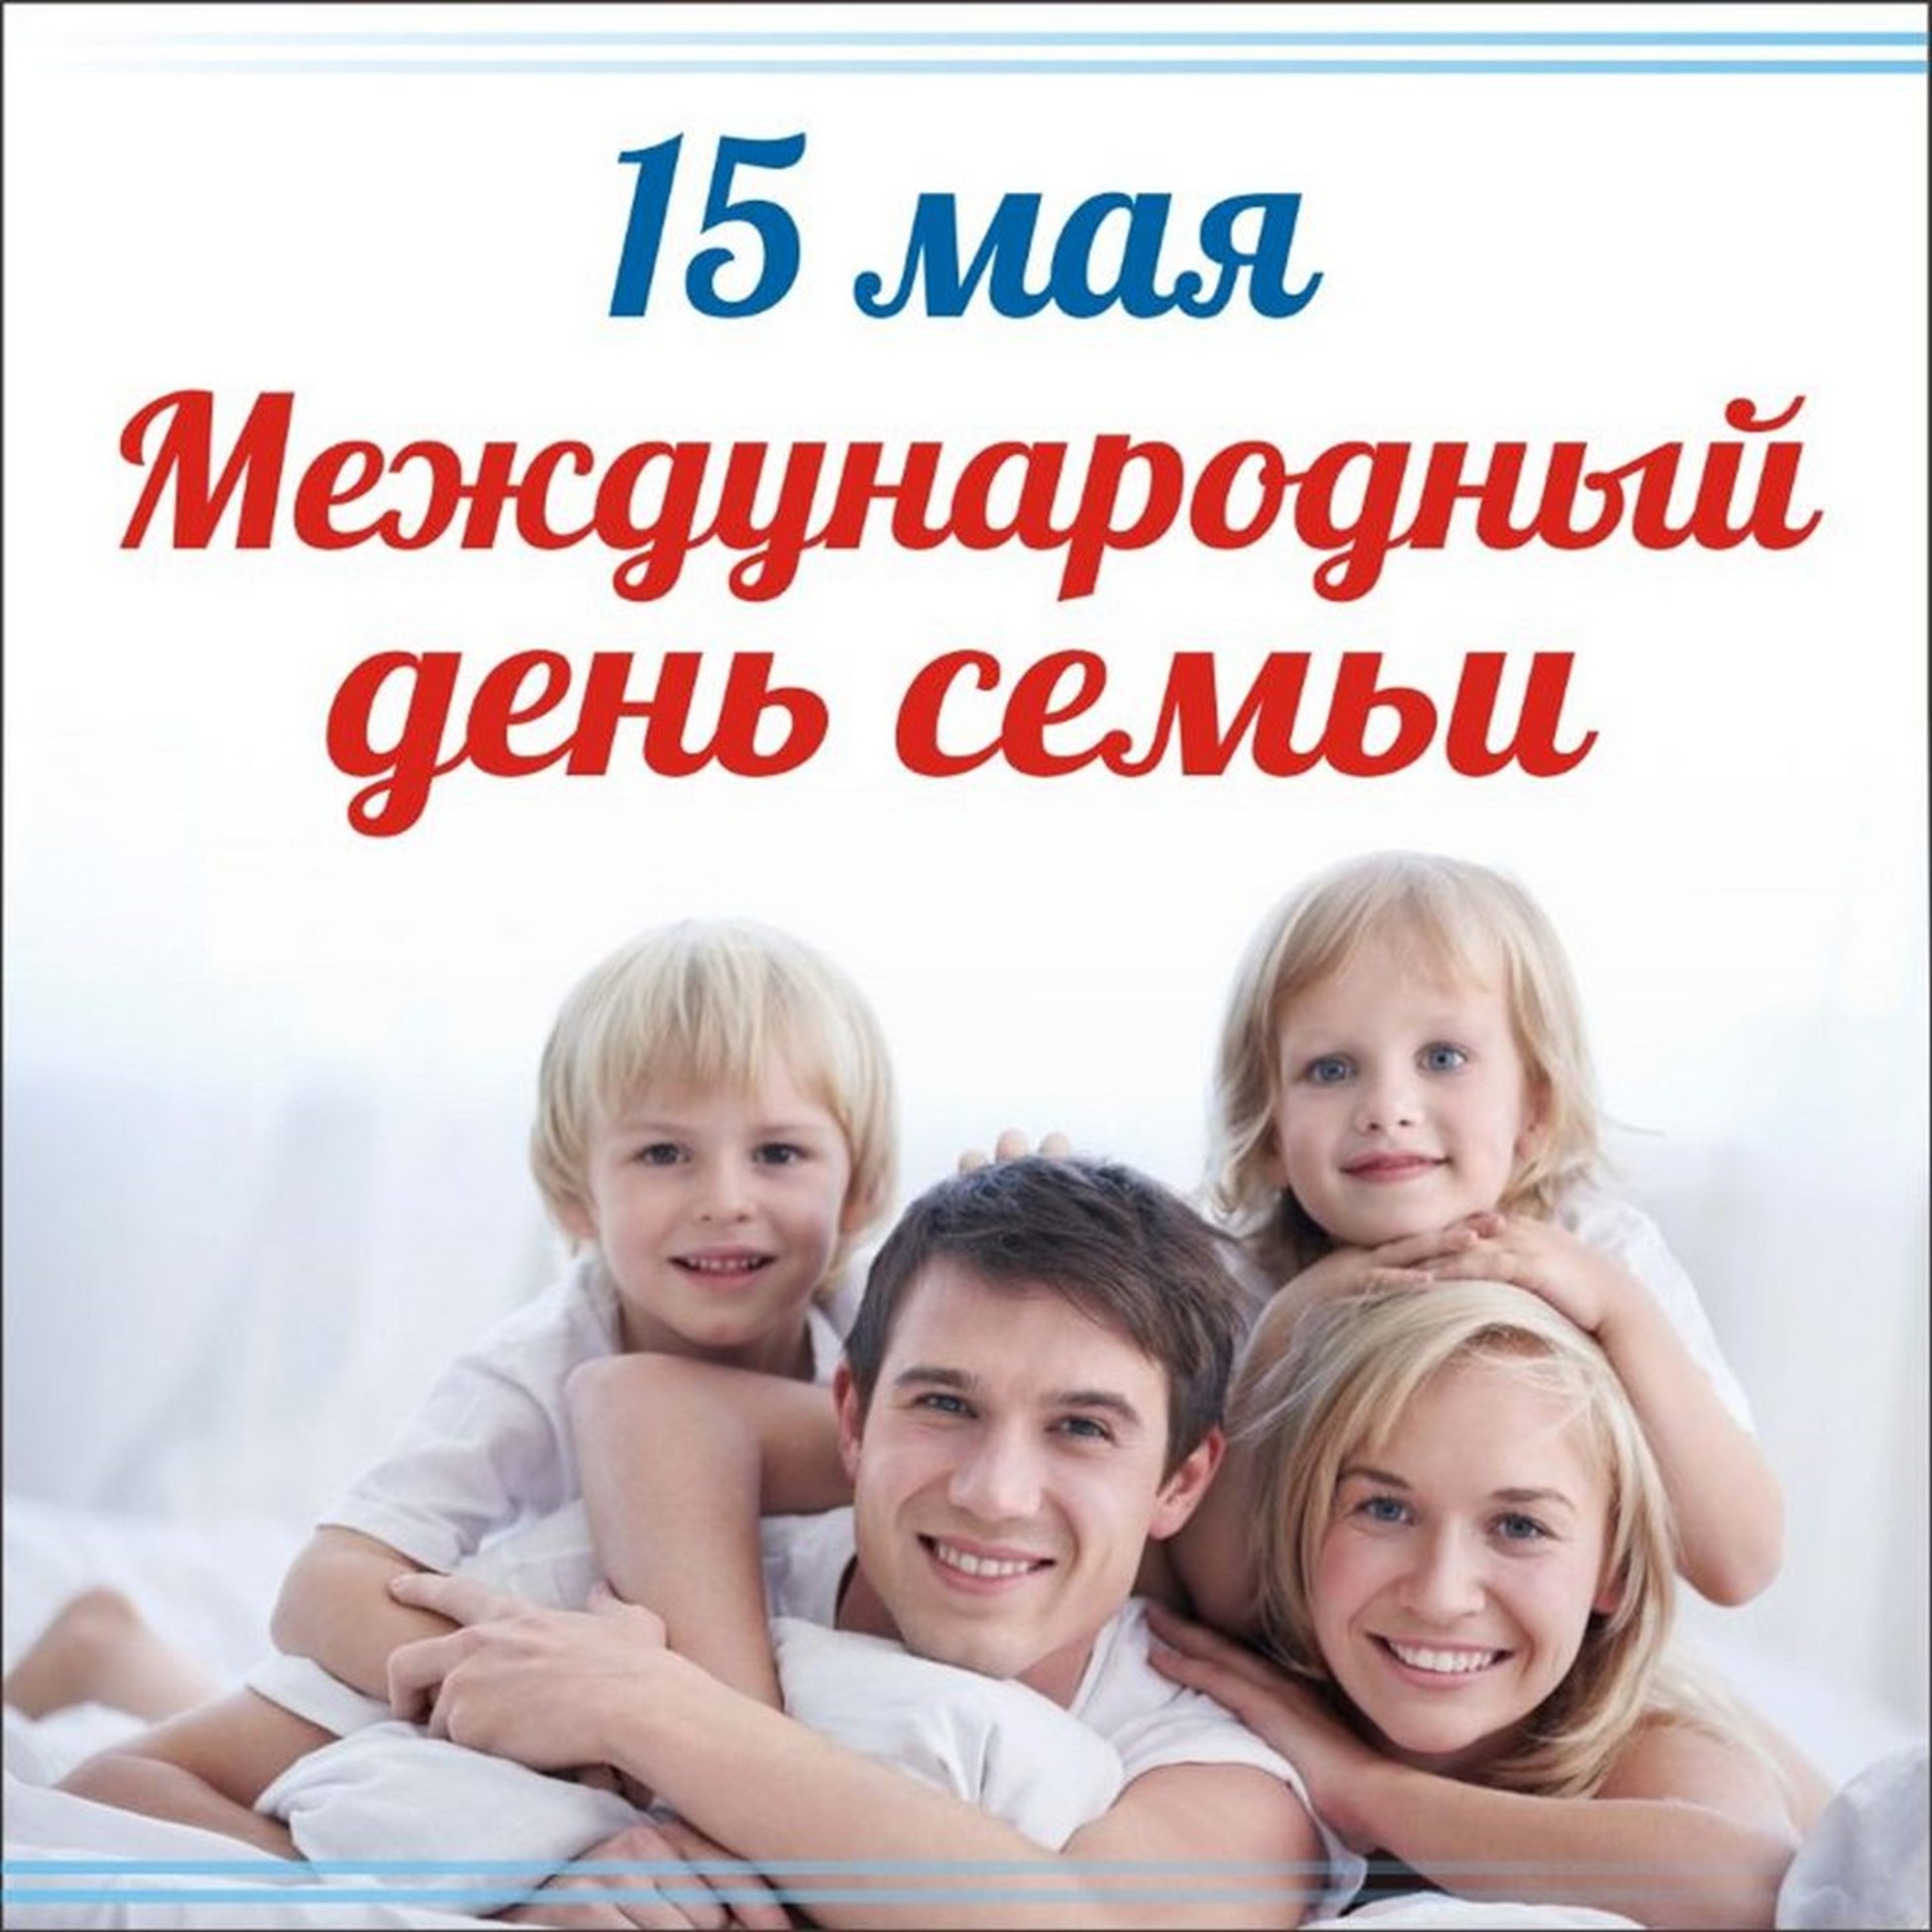 Праздник день семьи 15. Международный день семьи. День семьи 15 мая. Международный день семь. Международный деньснмьи.